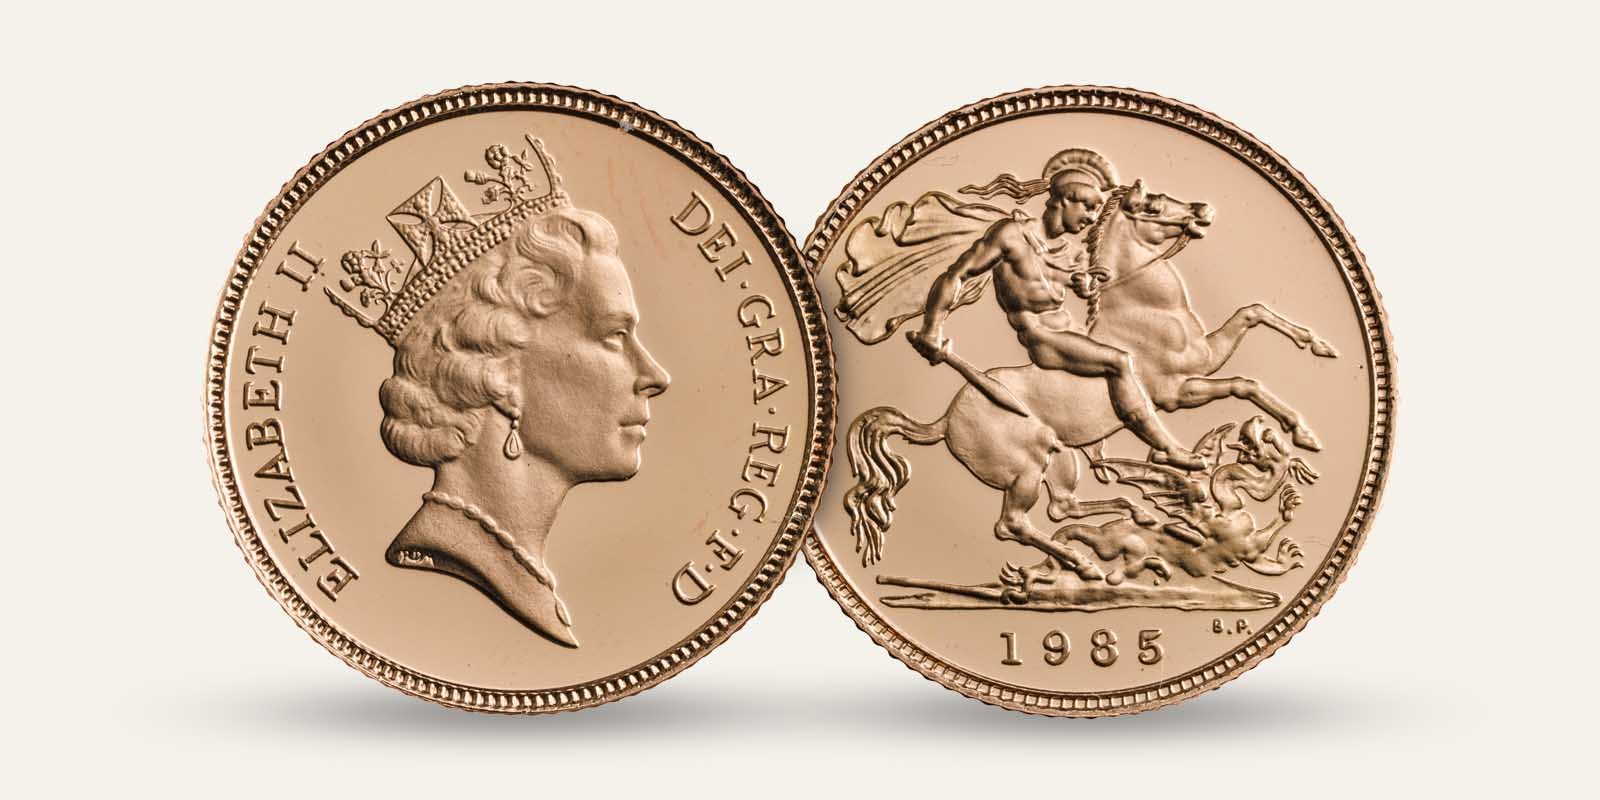 2-1985-queen-elizabeth-II-gold-sovereign.jpg